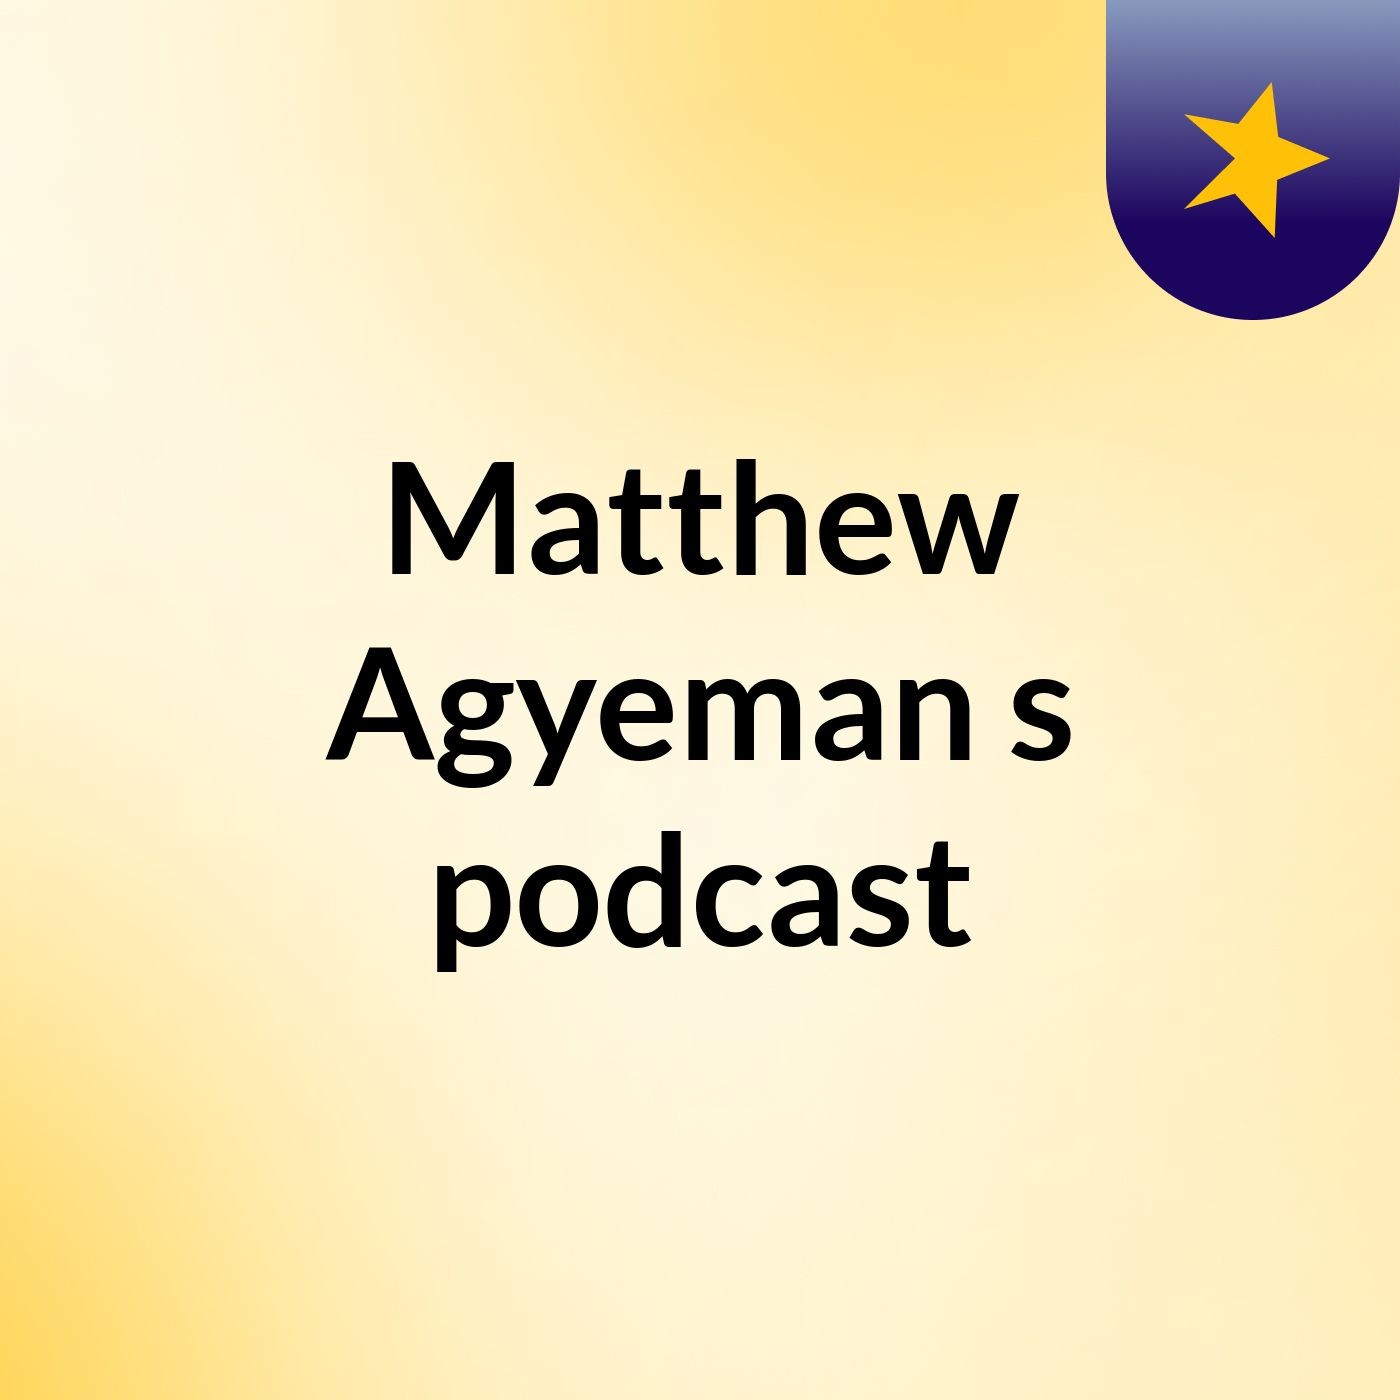 Matthew Agyeman's podcast